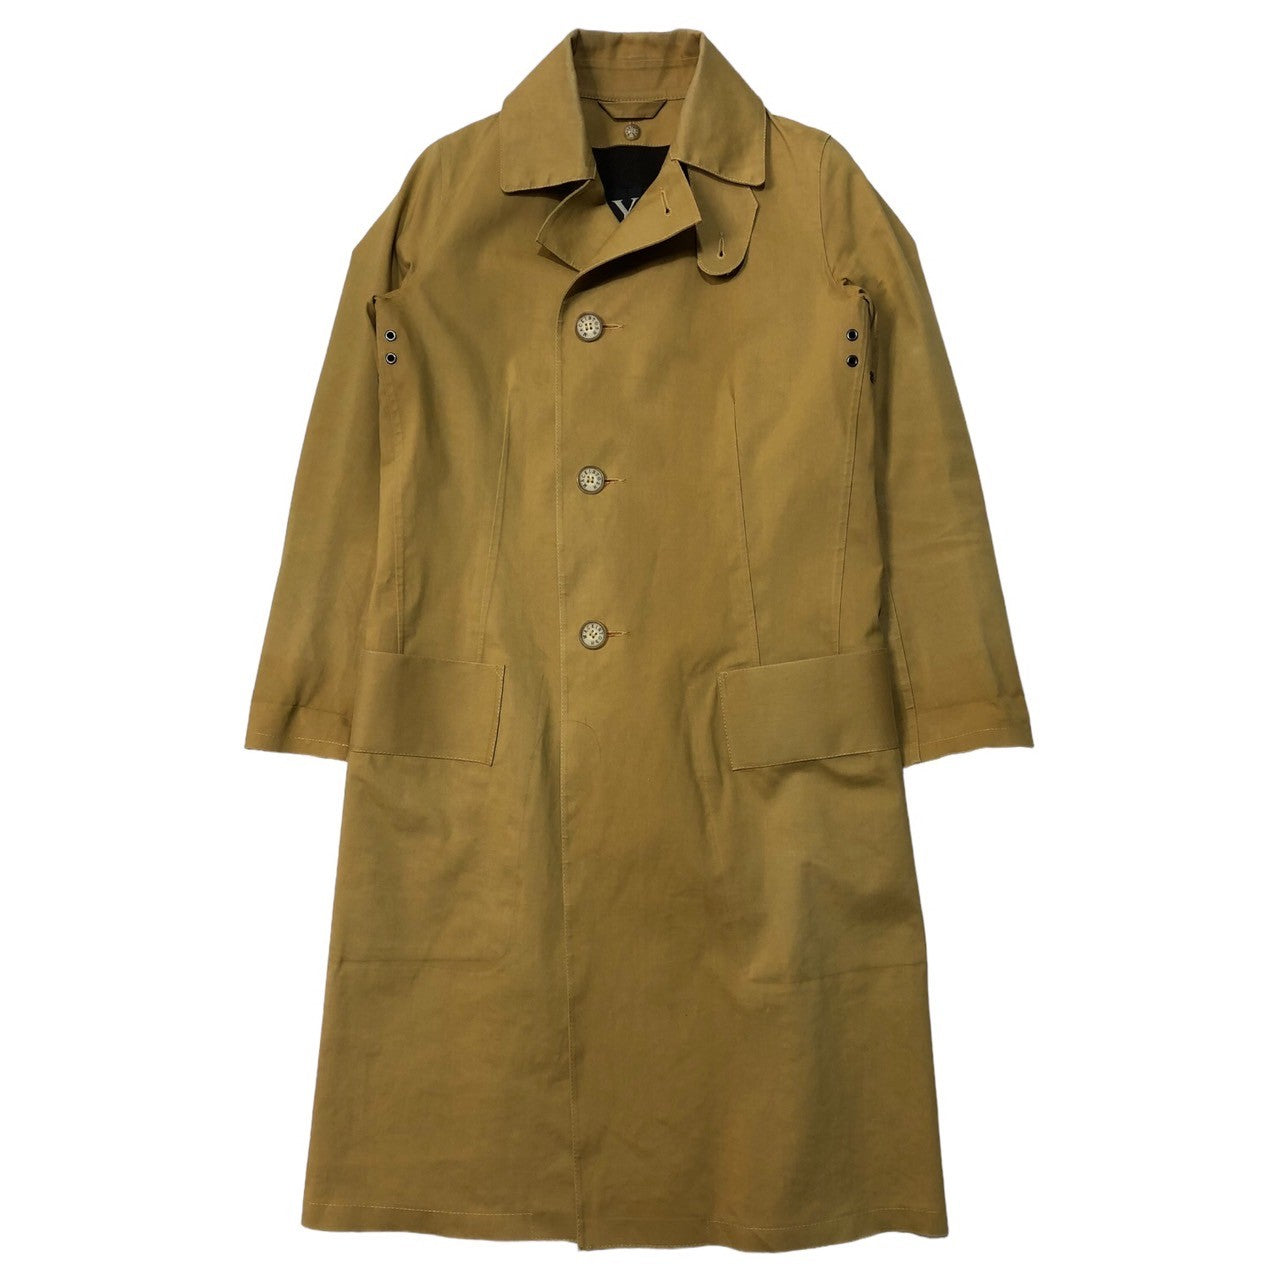 Y's × MACKINTOSH(ワイズ × マッキントッシュ) rubberized soutien collar coat coat ゴム引き ステンカラー コート YM-C91-003 SIZE 1(S) ベージュ トレンチ